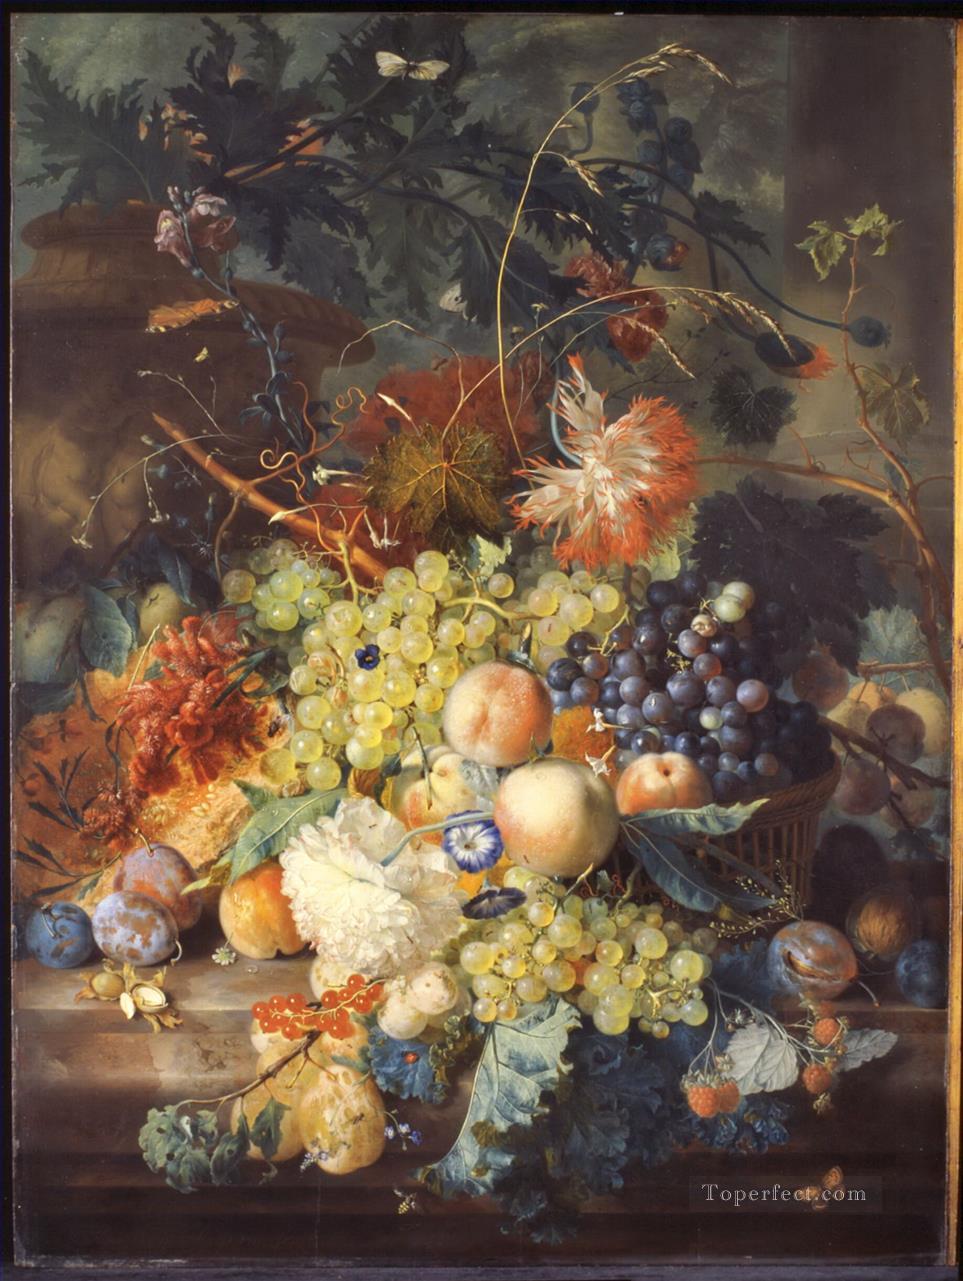 ヤン・ファン・ホイスム 古典的な壺の隣の籠に山盛りになった果物の静物画 1730年代 ヤン・ファン・ホイスム油絵